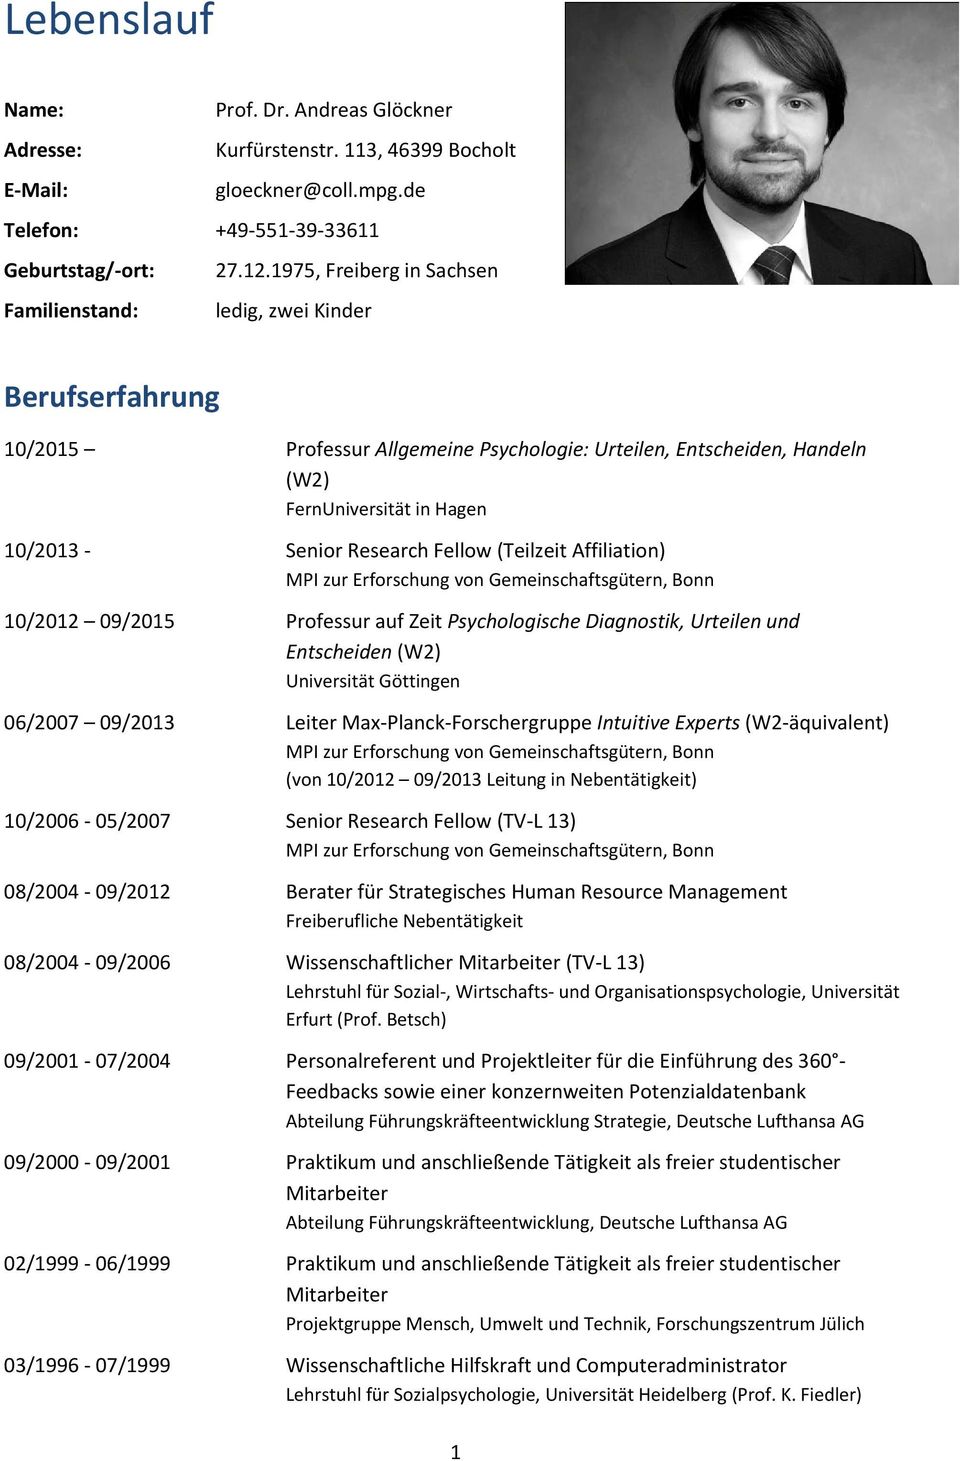 Research Fellow (Teilzeit Affiliation) MPI zur Erforschung von Gemeinschaftsgütern, Bonn 10/2012 09/2015 Professur auf Zeit Psychologische Diagnostik, Urteilen und Entscheiden (W2) Universität